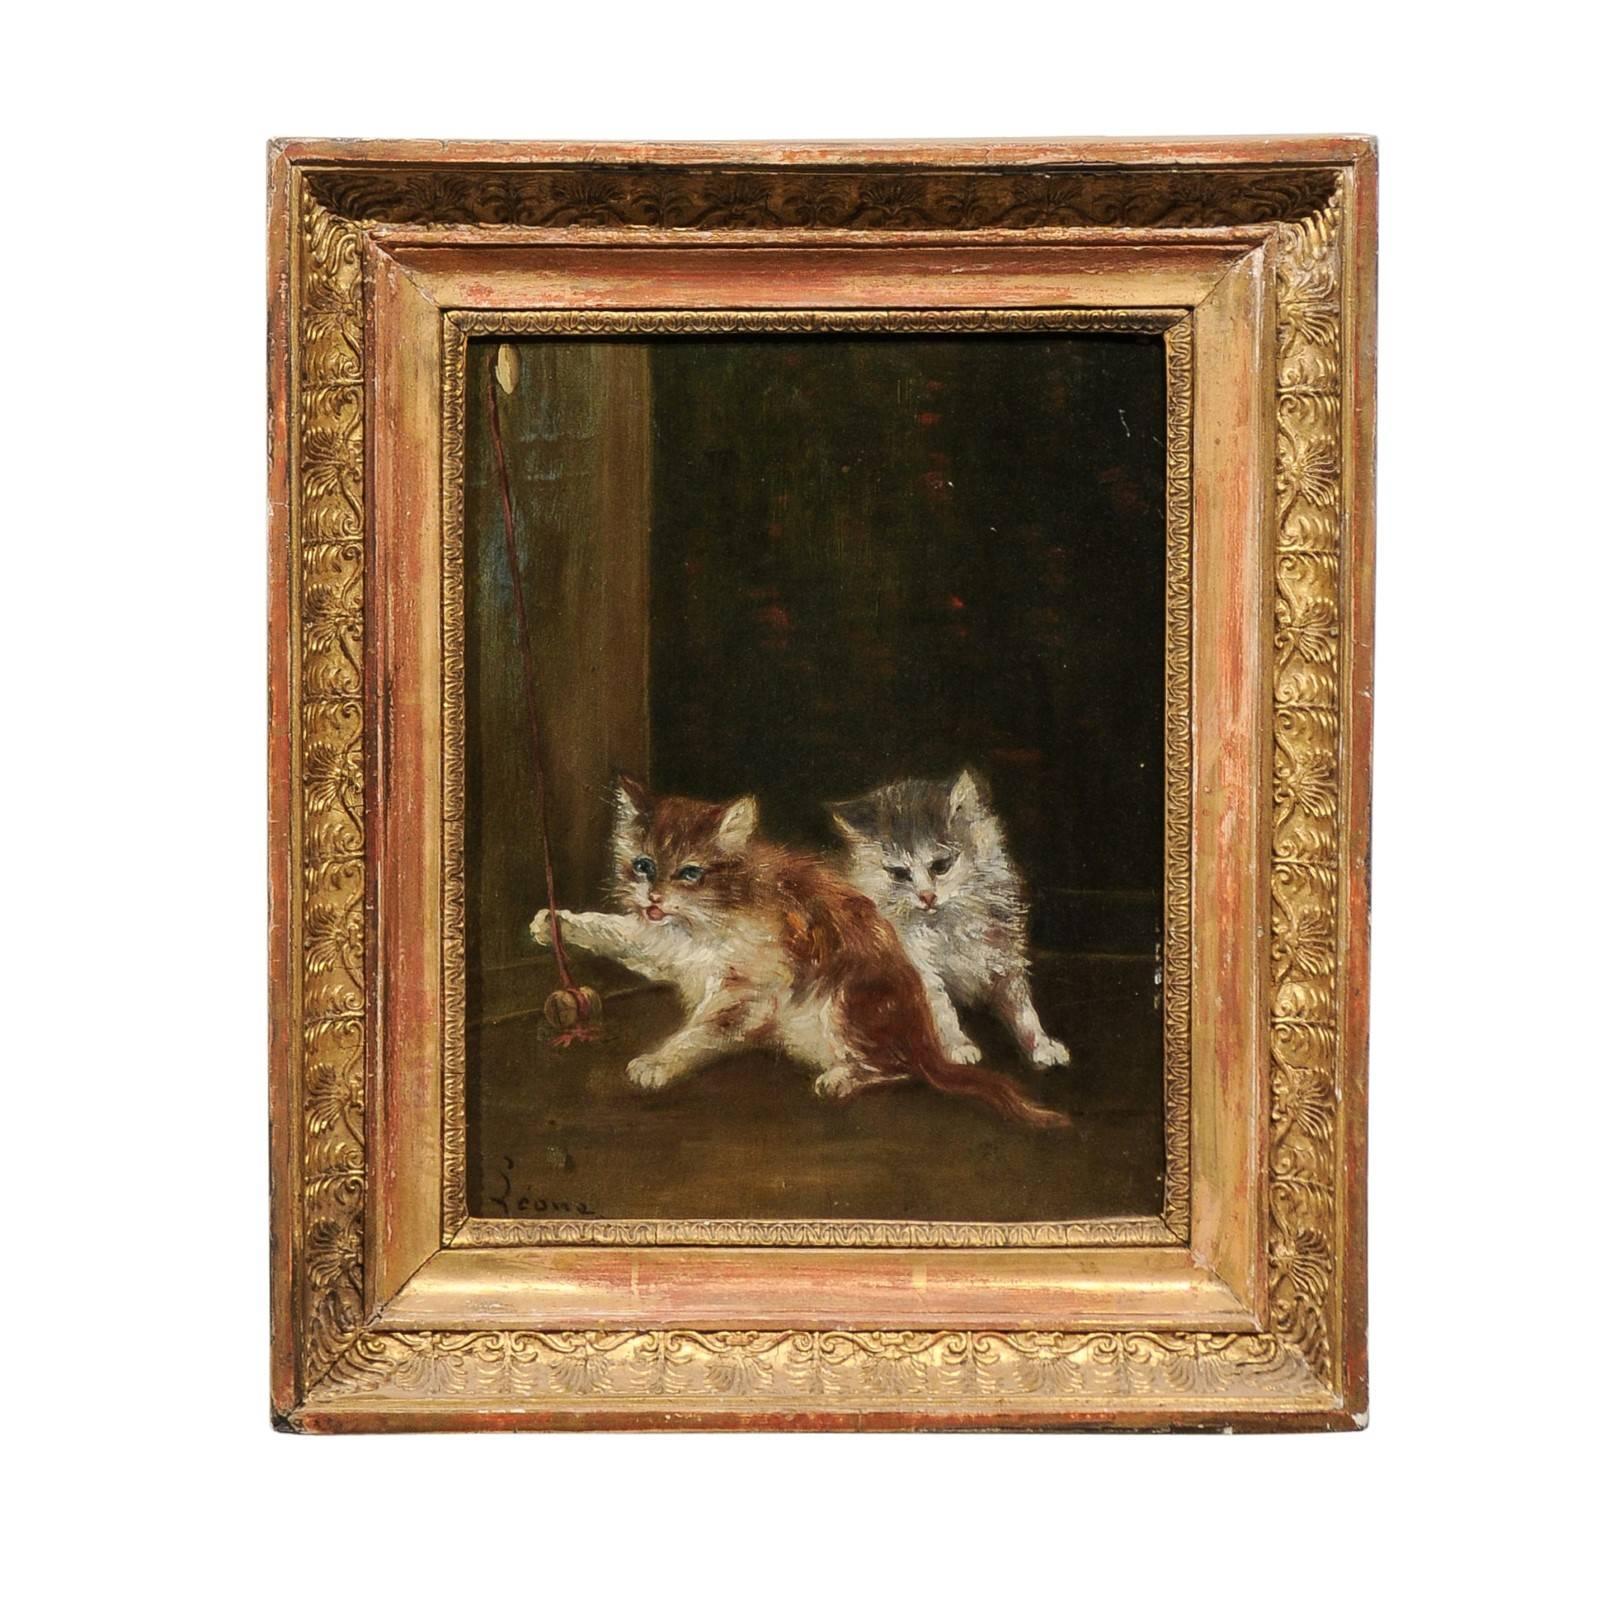 Peinture à l'huile sur toile française des années 1890 représentant des chatons jouant dans un cadre en bois doré